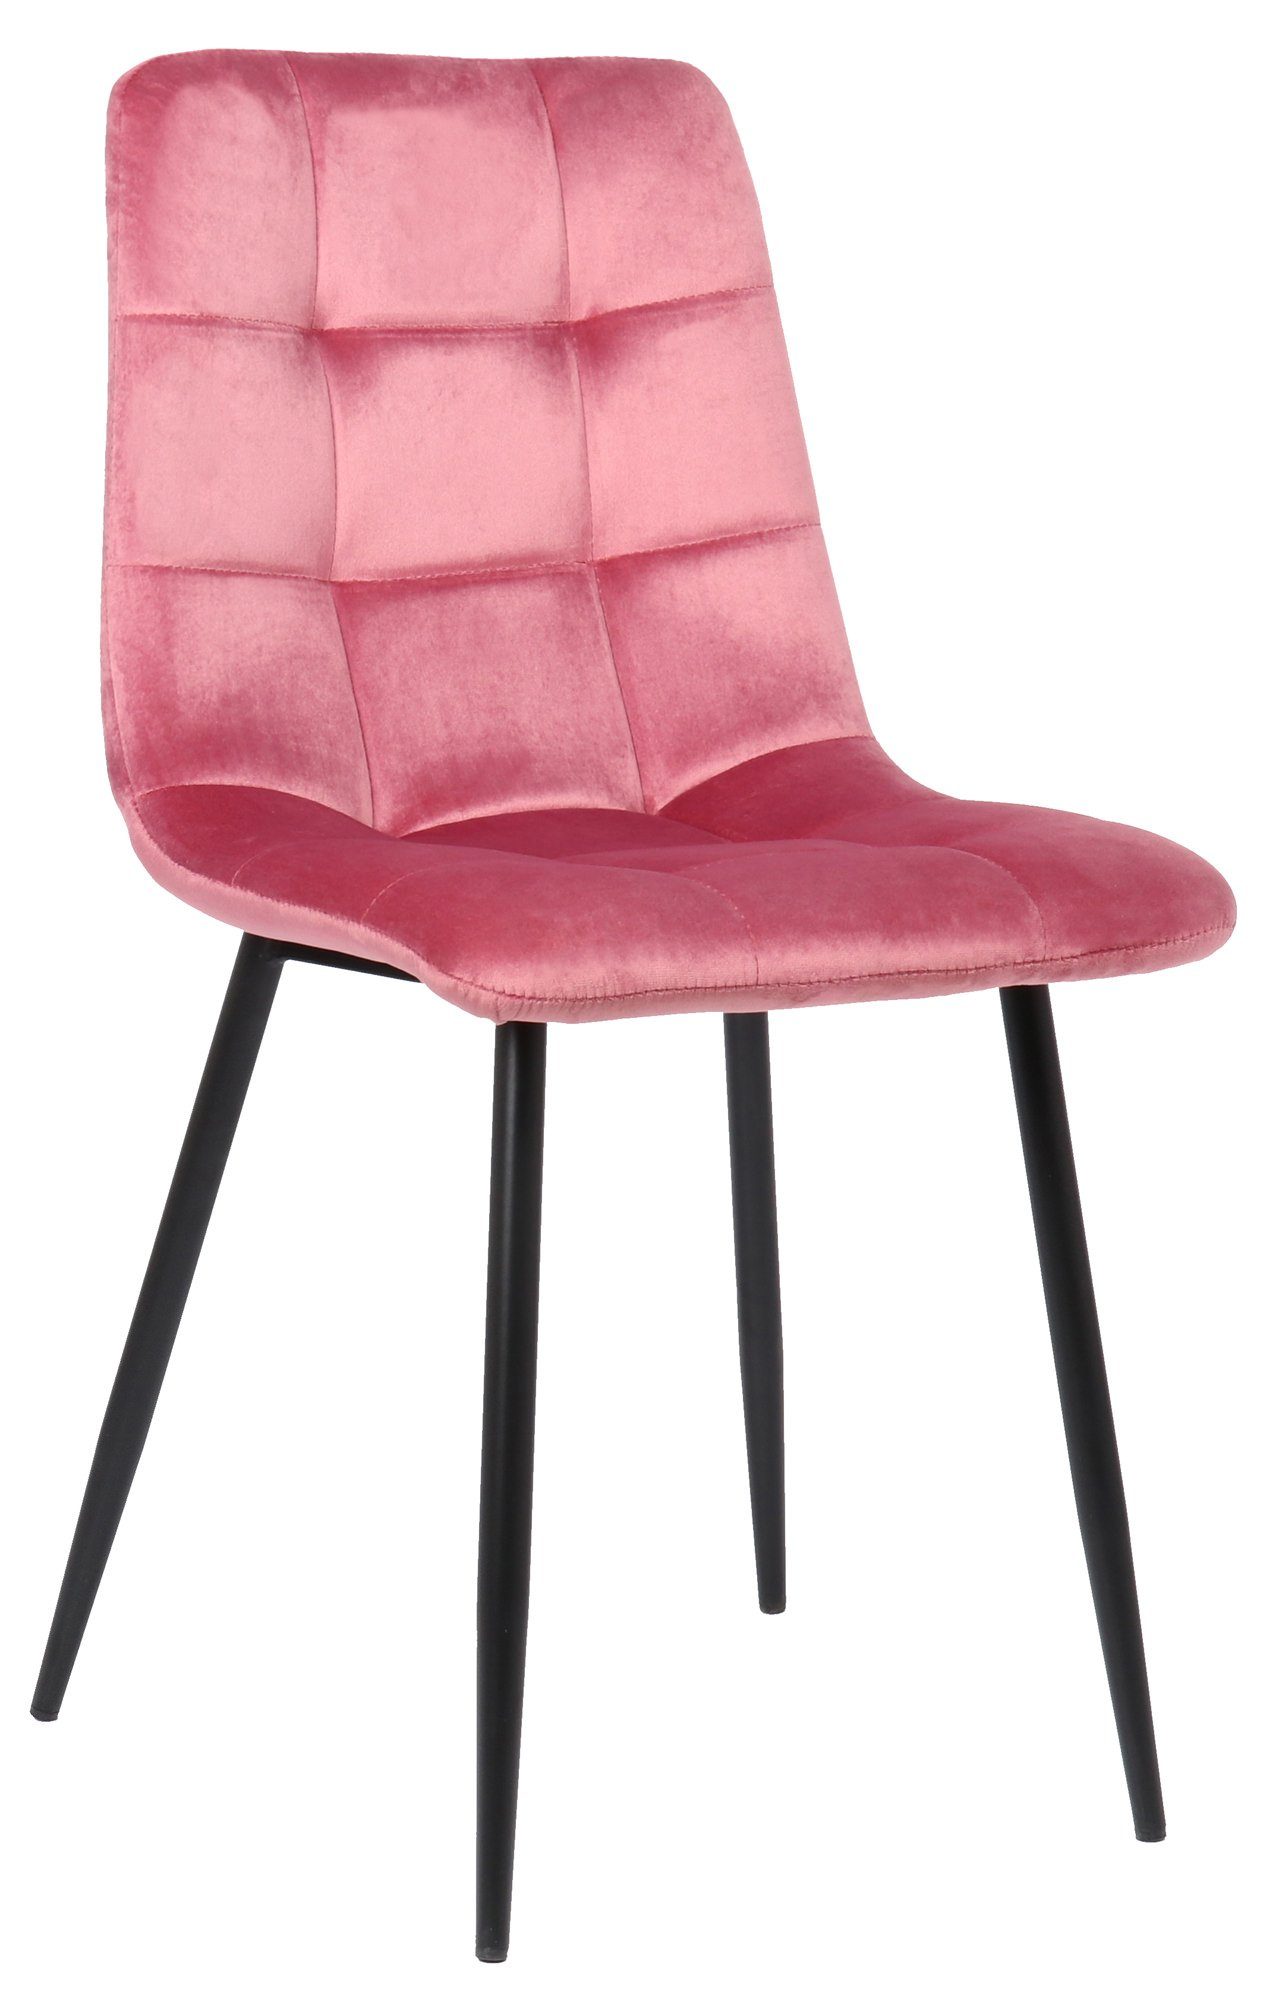 TPFLiving Esszimmerstuhl Till mit hochwertig gepolsterter Sitzfläche - Konferenzstuhl (Küchenstuhl - Esstischstuhl - Wohnzimmerstuhl - Polsterstuhl), Gestell: Metall schwarz - Sitzfläche: Samt pink